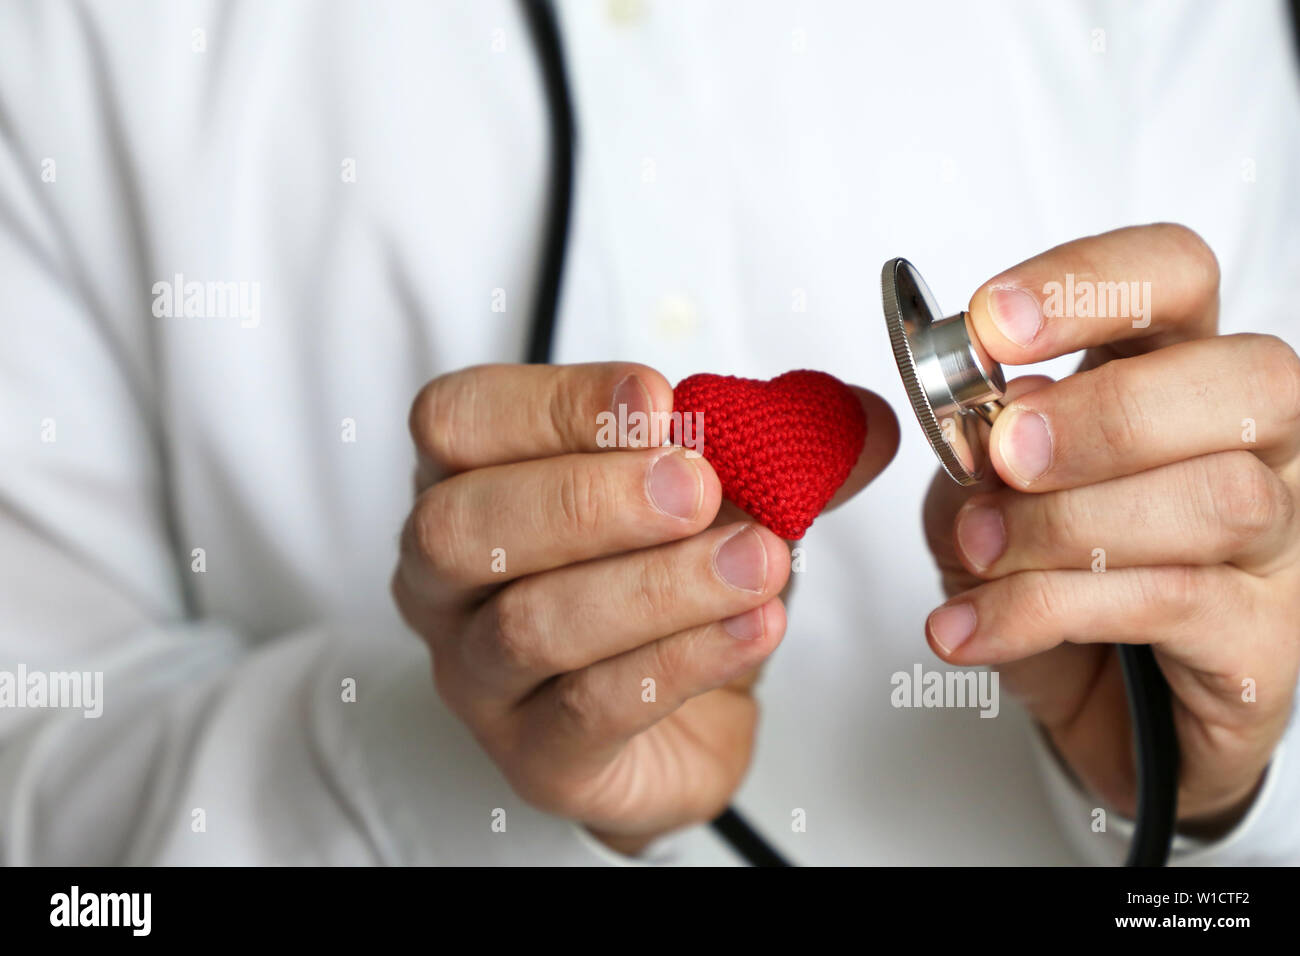 Doktor mit Stethoskop und Rot gestrickt Herz in der Hand. Konzept der Kardiologen, Herz Krankheiten, Diagnose, Blutdruck, medizinische Untersuchung Stockfoto